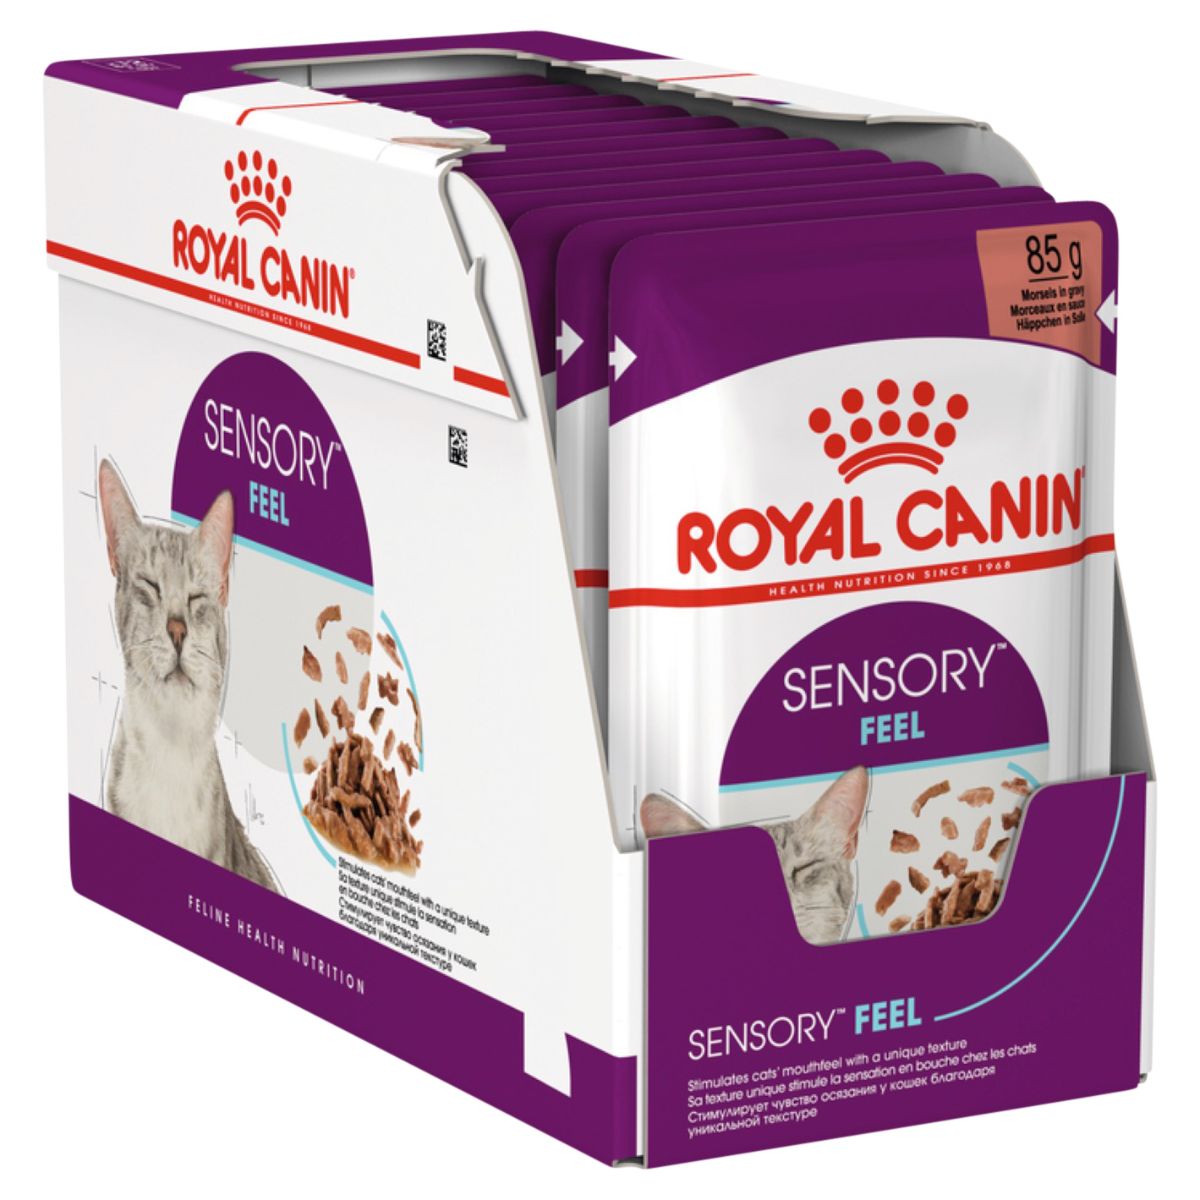 Royal Canin Sensory Feel Chunks in Gravy Wet Cat Food 85G